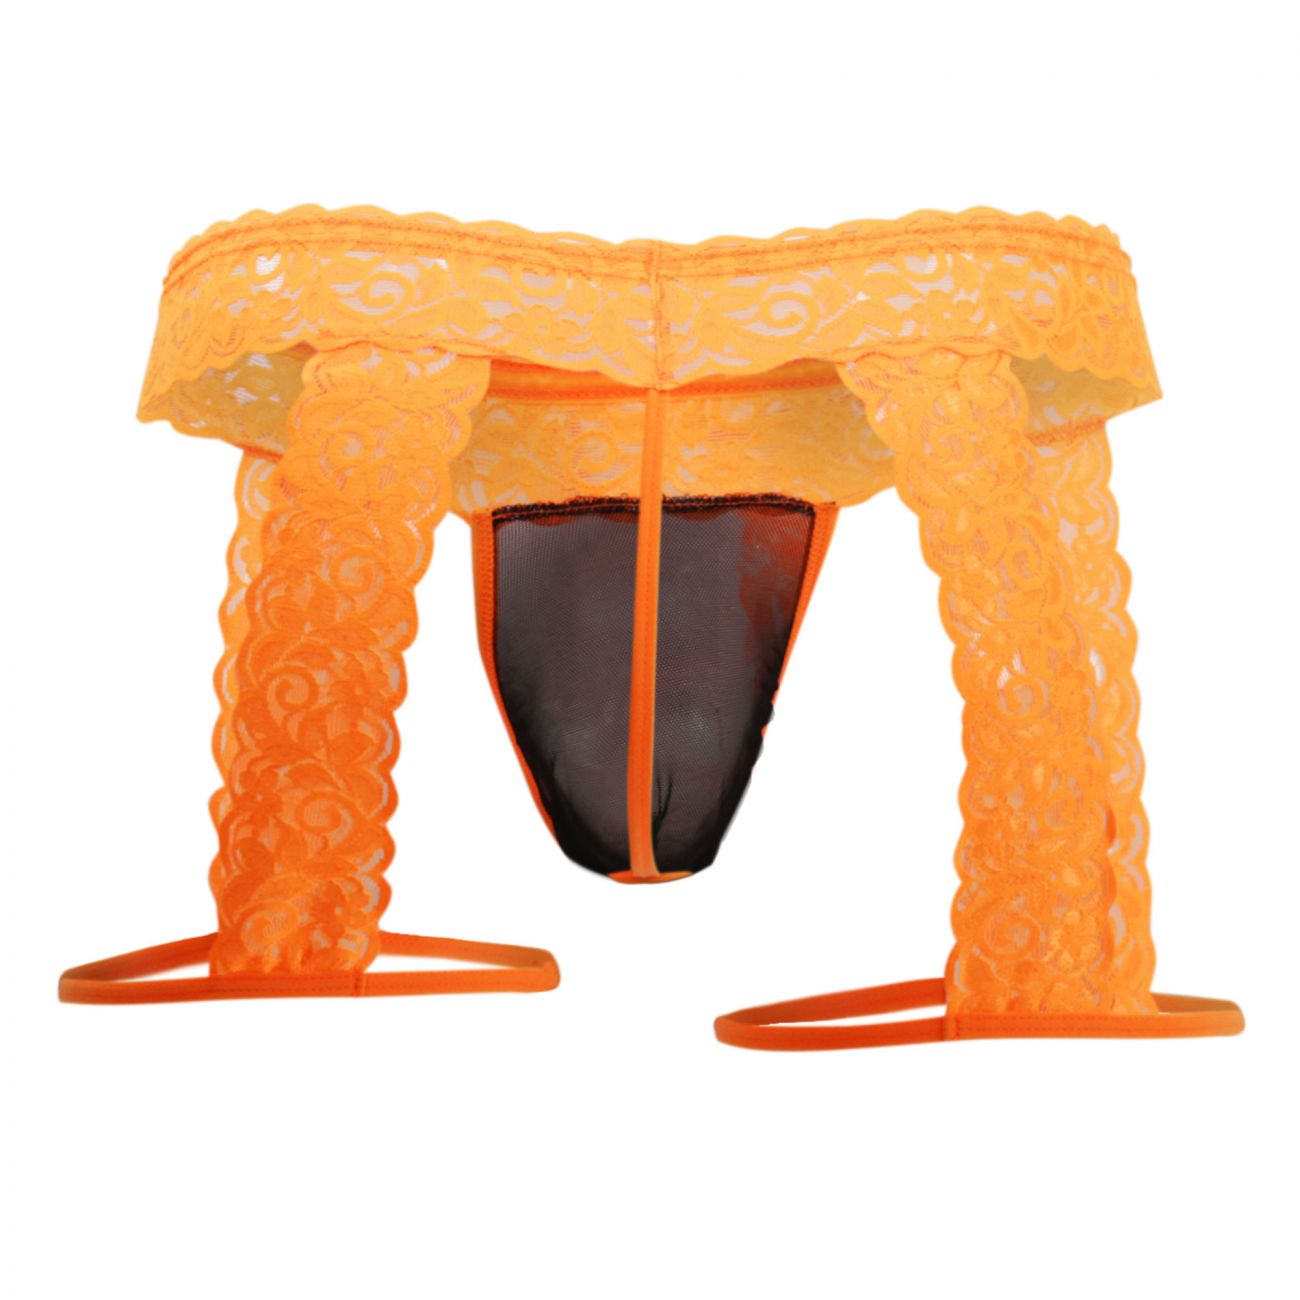 CandyMan 99369X Lace Thongs Hot Orange Plus Sizes